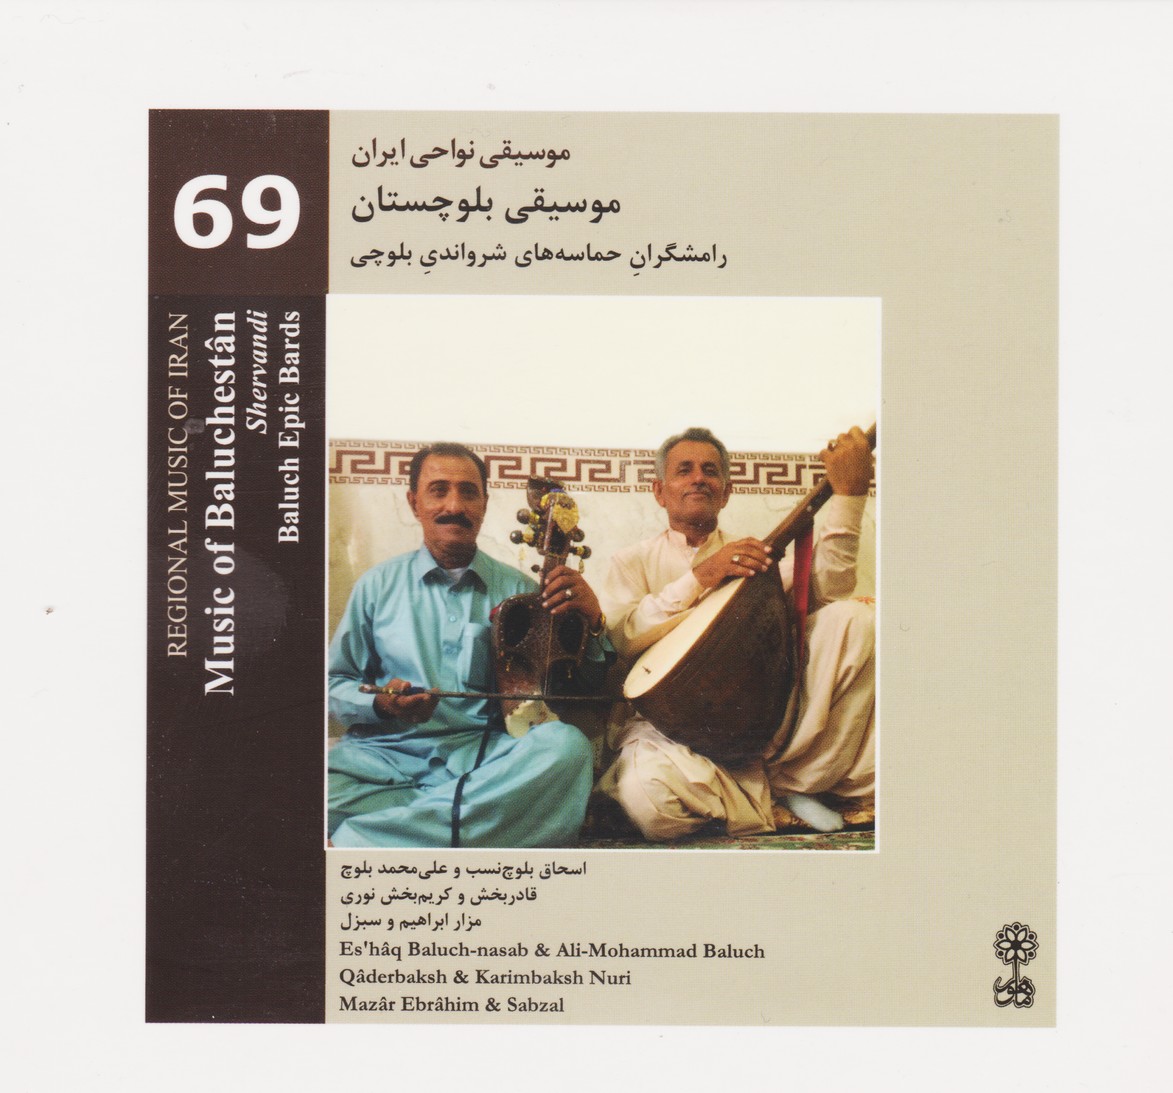 موسیقی نواحی ایران 69: موسیقی بلوچستان/رامشگران حماسه شرواندی بلوچی